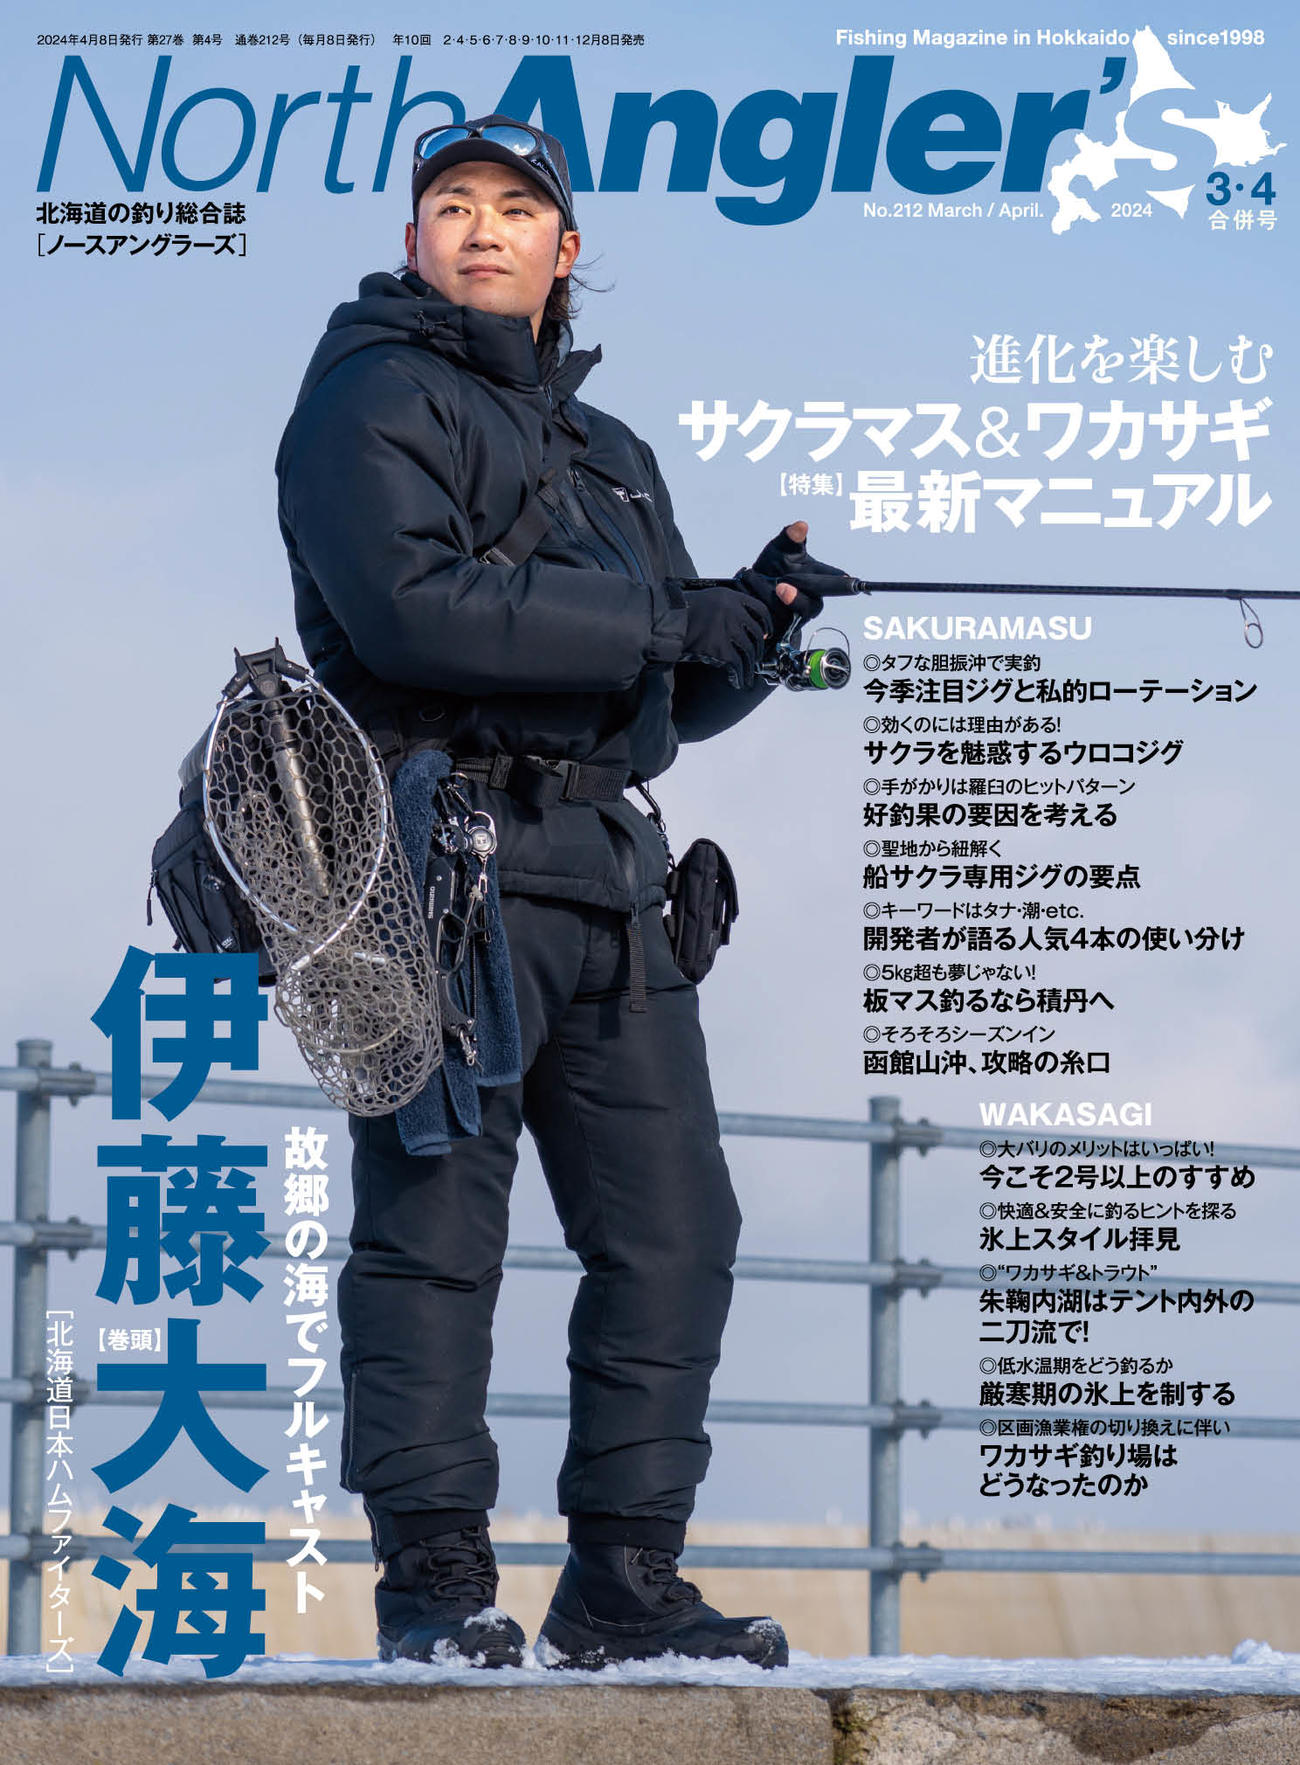 日本ハム伊藤が表紙になった「North Angler’s」3・4月合併号（North Angler’s提供）